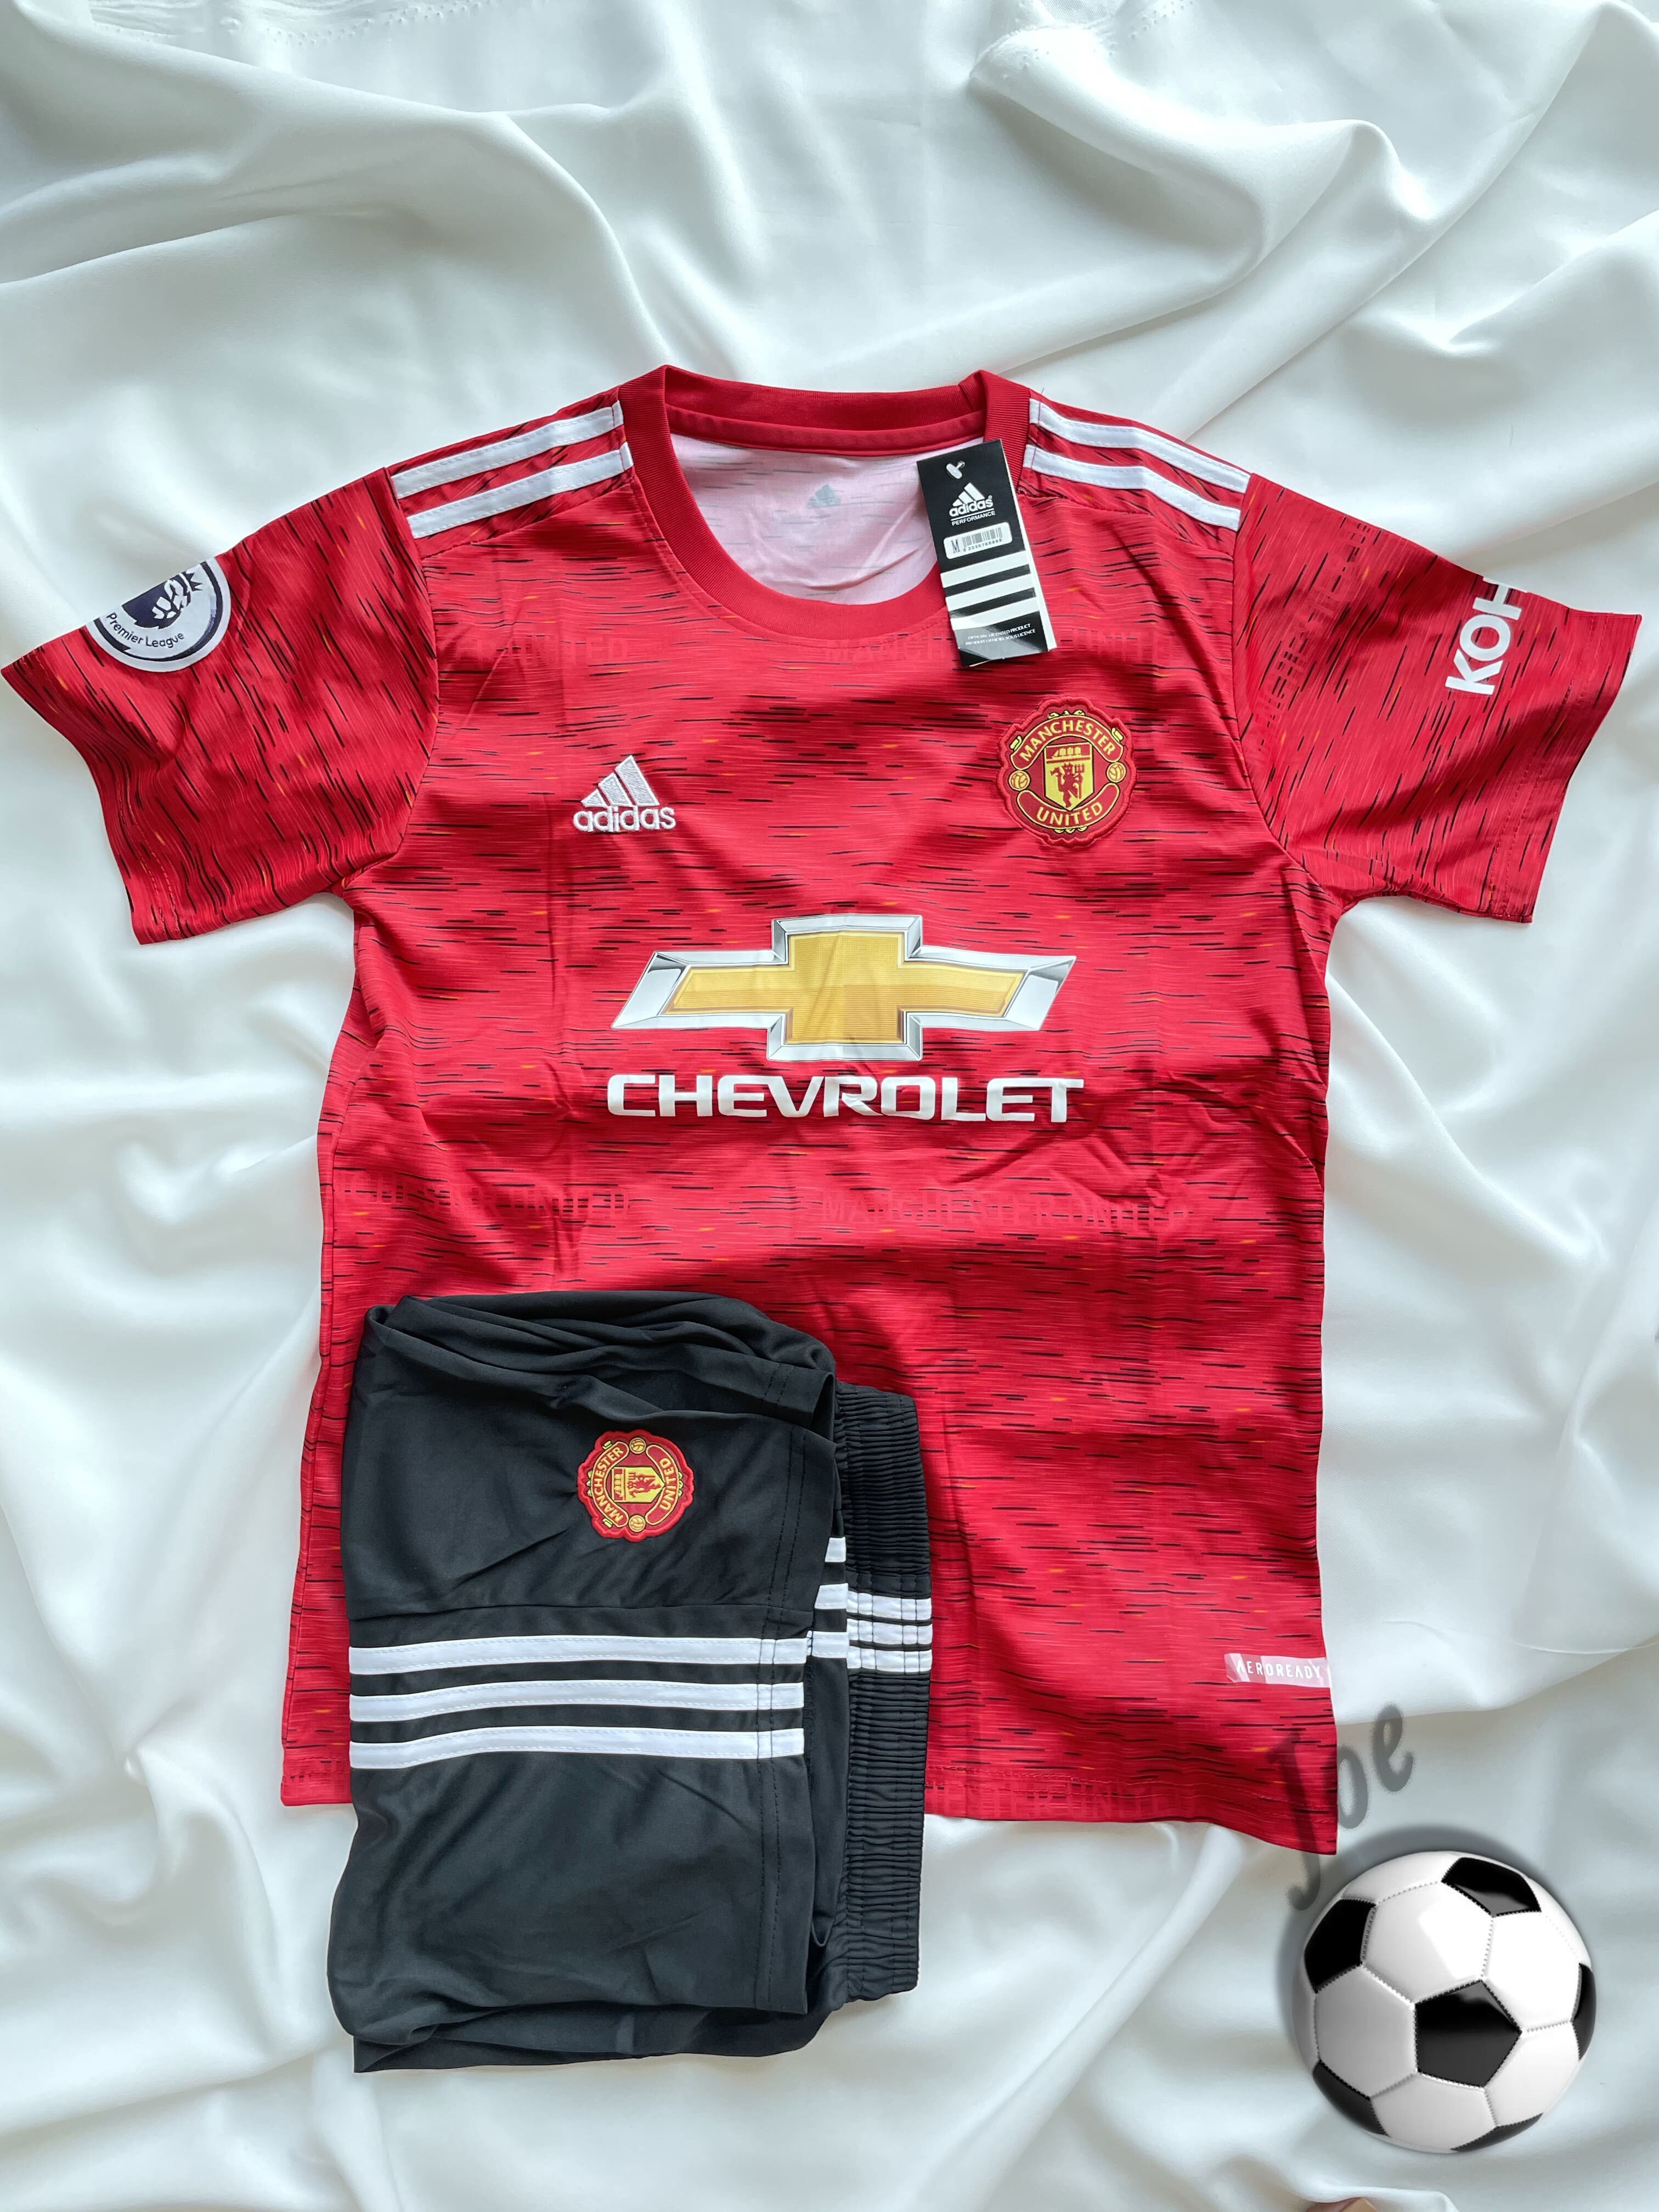 ชุดบอล Manchester United เสื้อบอลและกางเกงบอลผู้ชายลีกยุโรป ปี 2020-2021